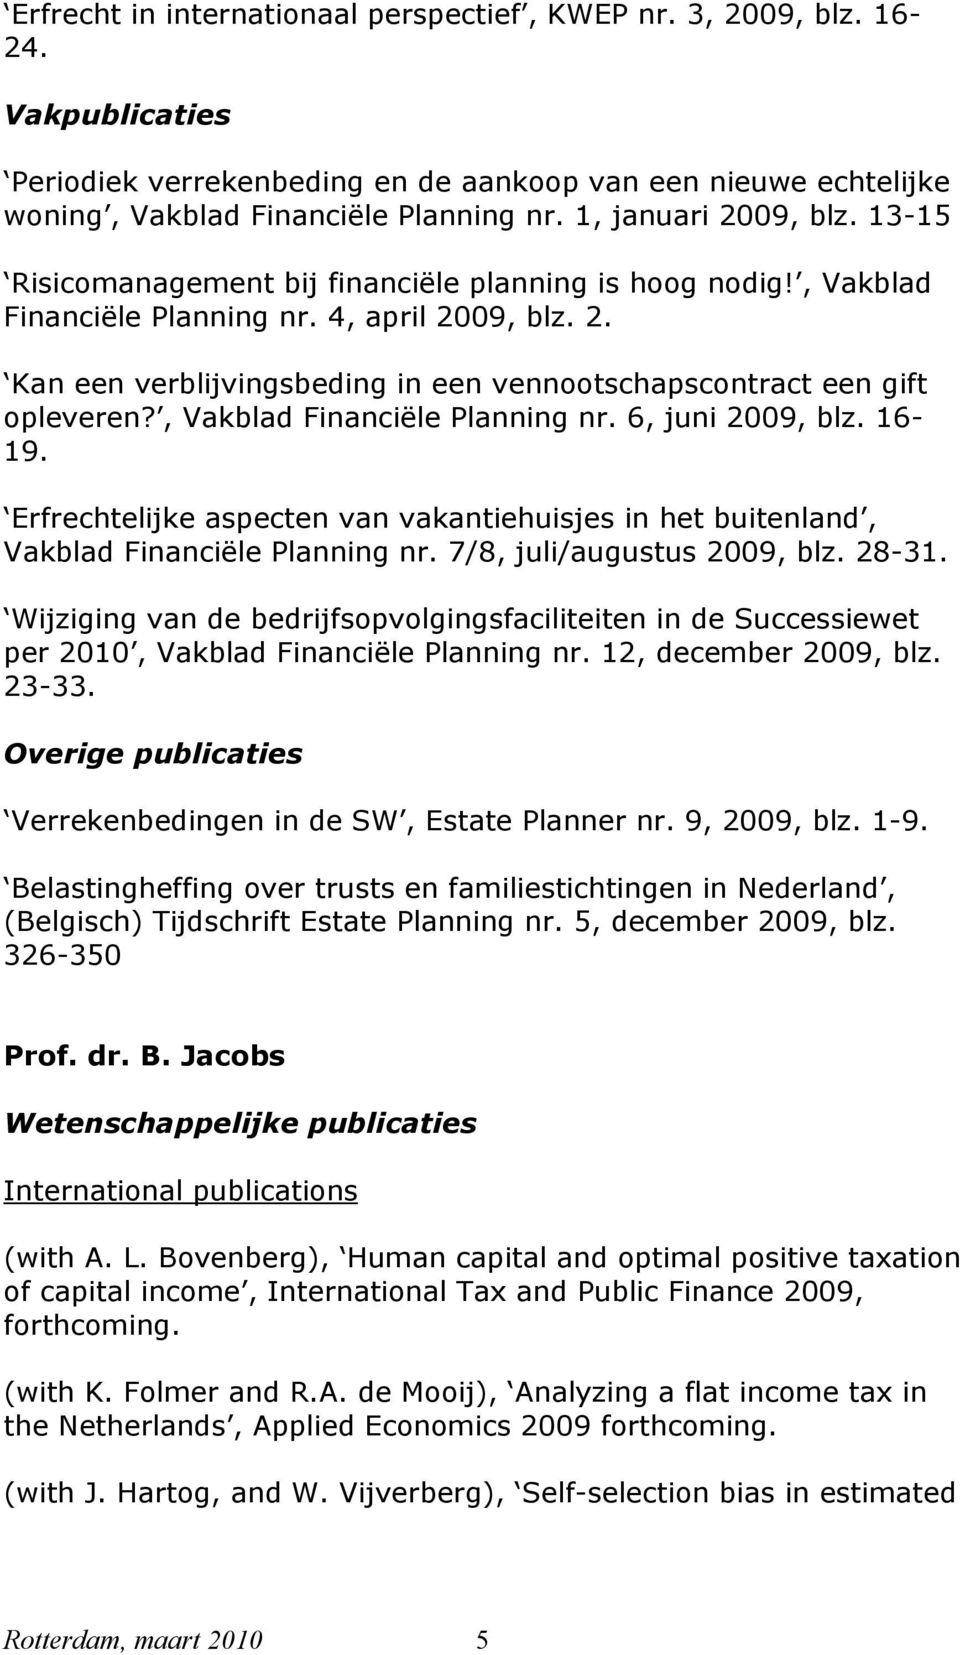 , Vakblad Financiële Planning nr. 6, juni 2009, blz. 16-19. Erfrechtelijke aspecten van vakantiehuisjes in het buitenland, Vakblad Financiële Planning nr. 7/8, juli/augustus 2009, blz. 28-31.